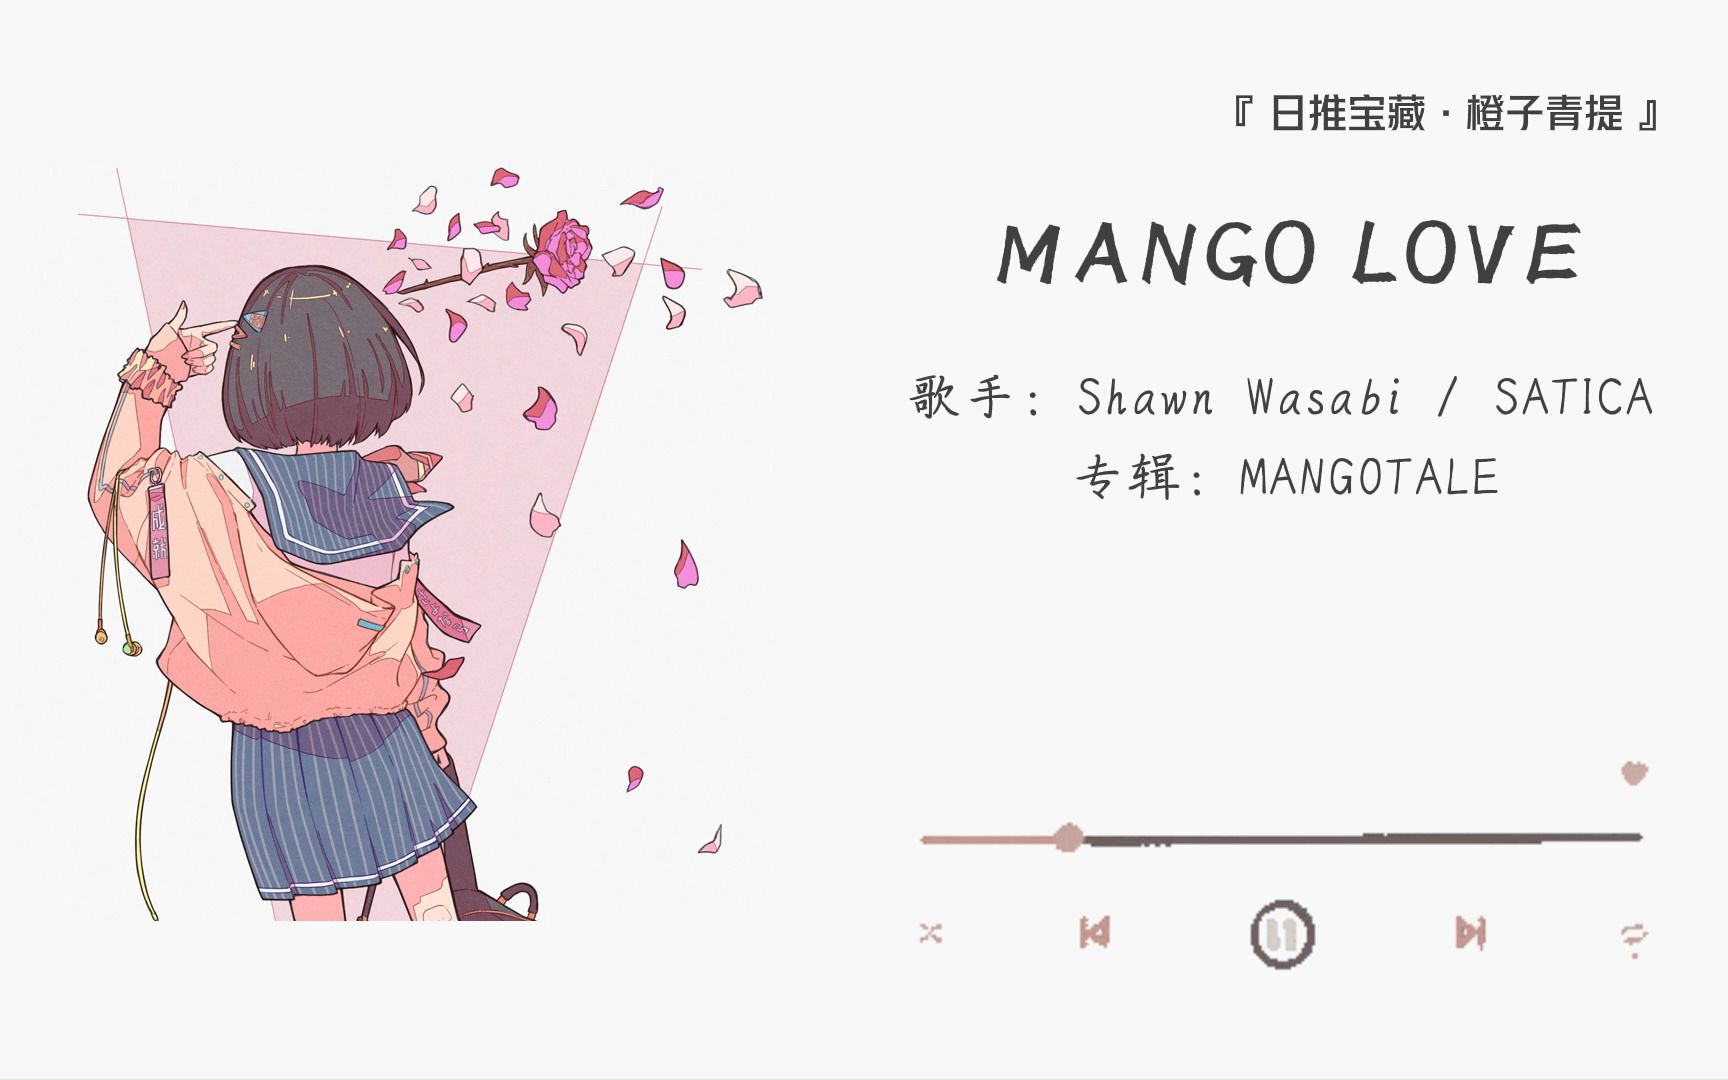 《Mango Love》||“原来芒果也会坠入爱河喔”